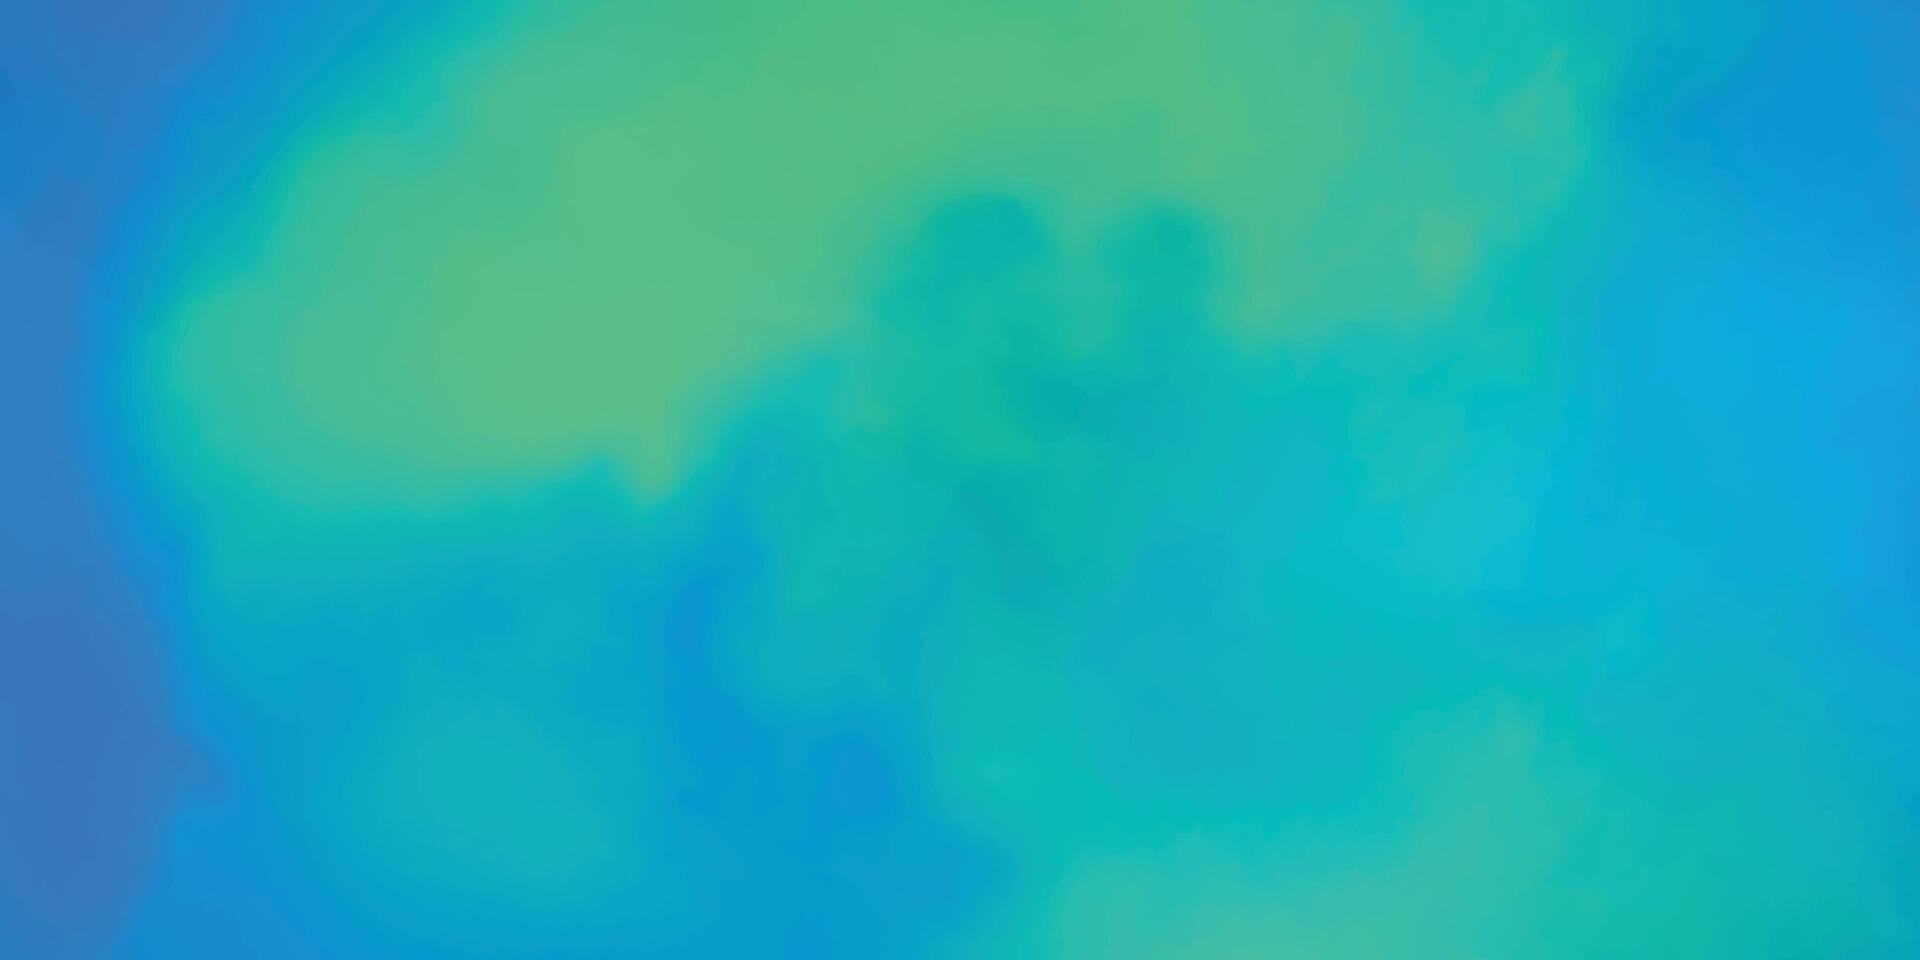 Blau Grün Hintergrund. bunt Aquarell Wolke Textur. abstrakt Aquarell Hintergrund. modern Grunge Textur vektor